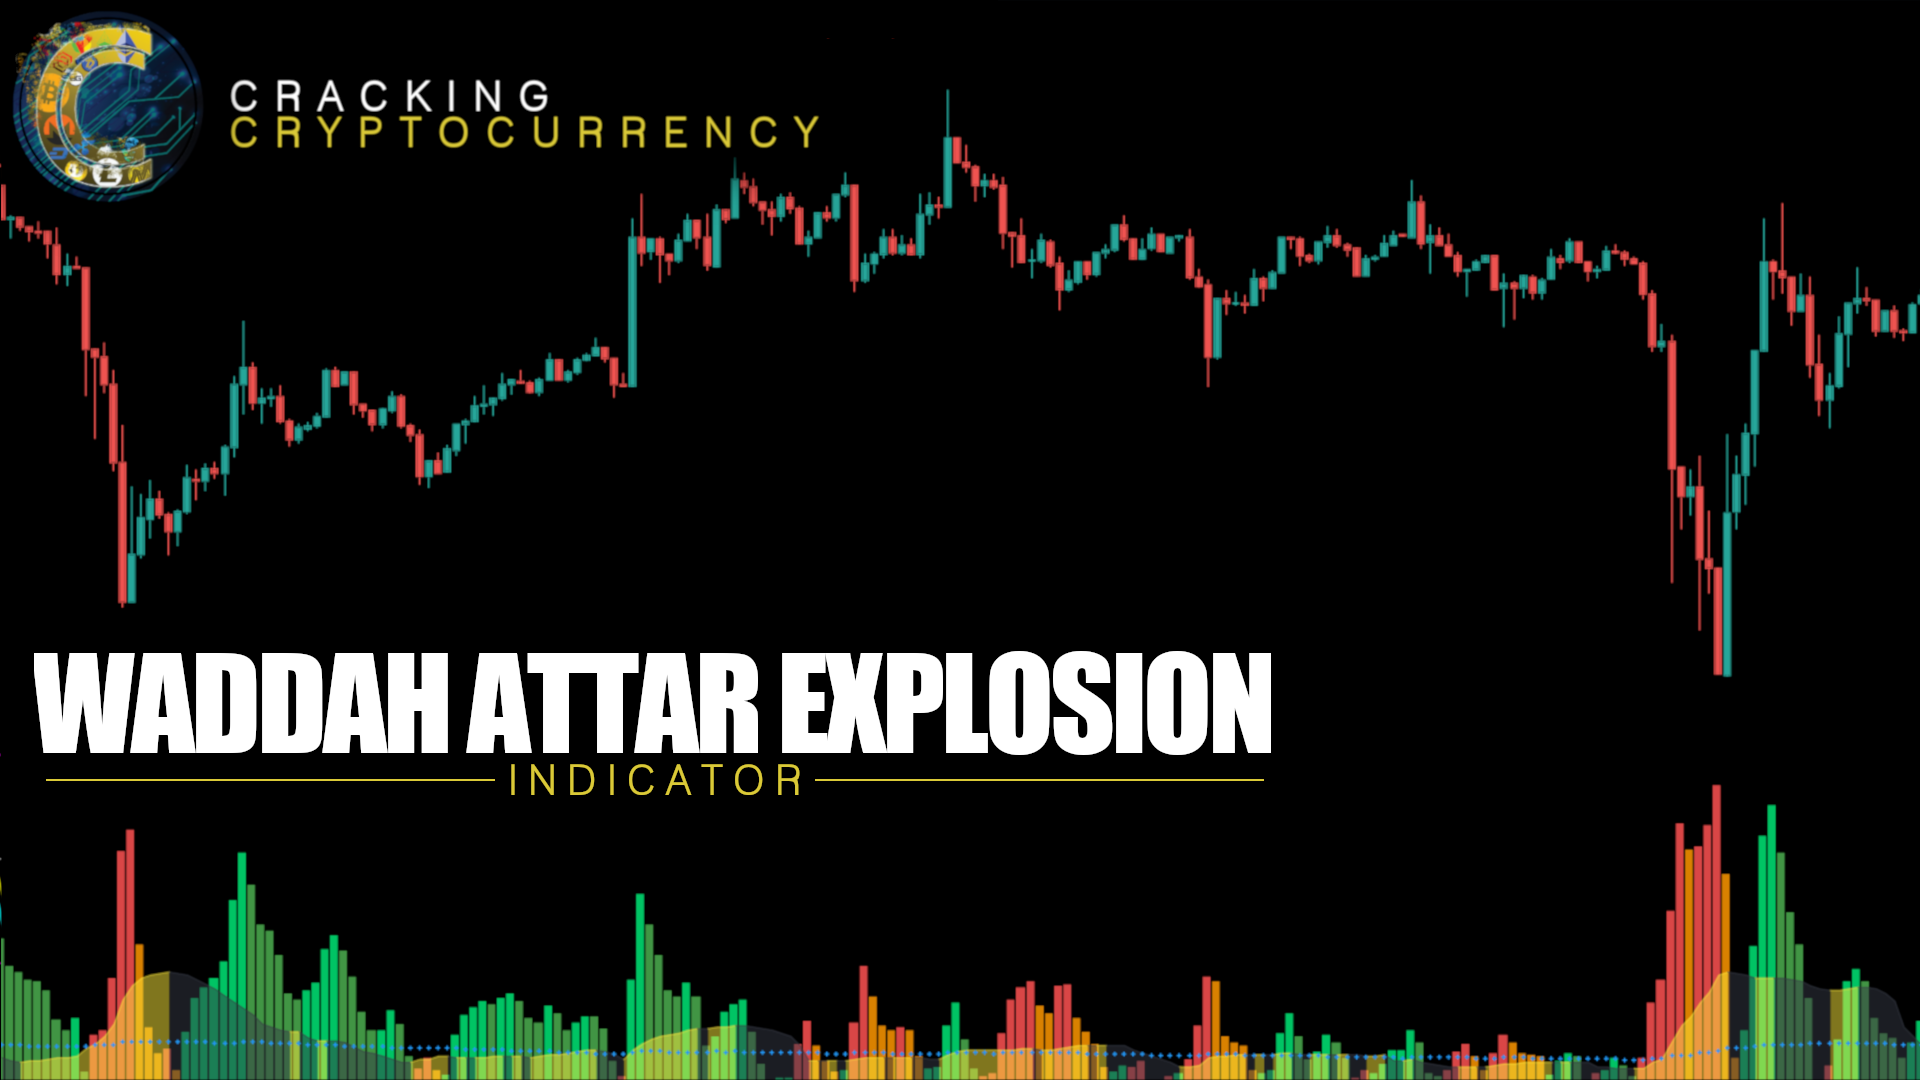 Indicators - Waddah Attar Explosion